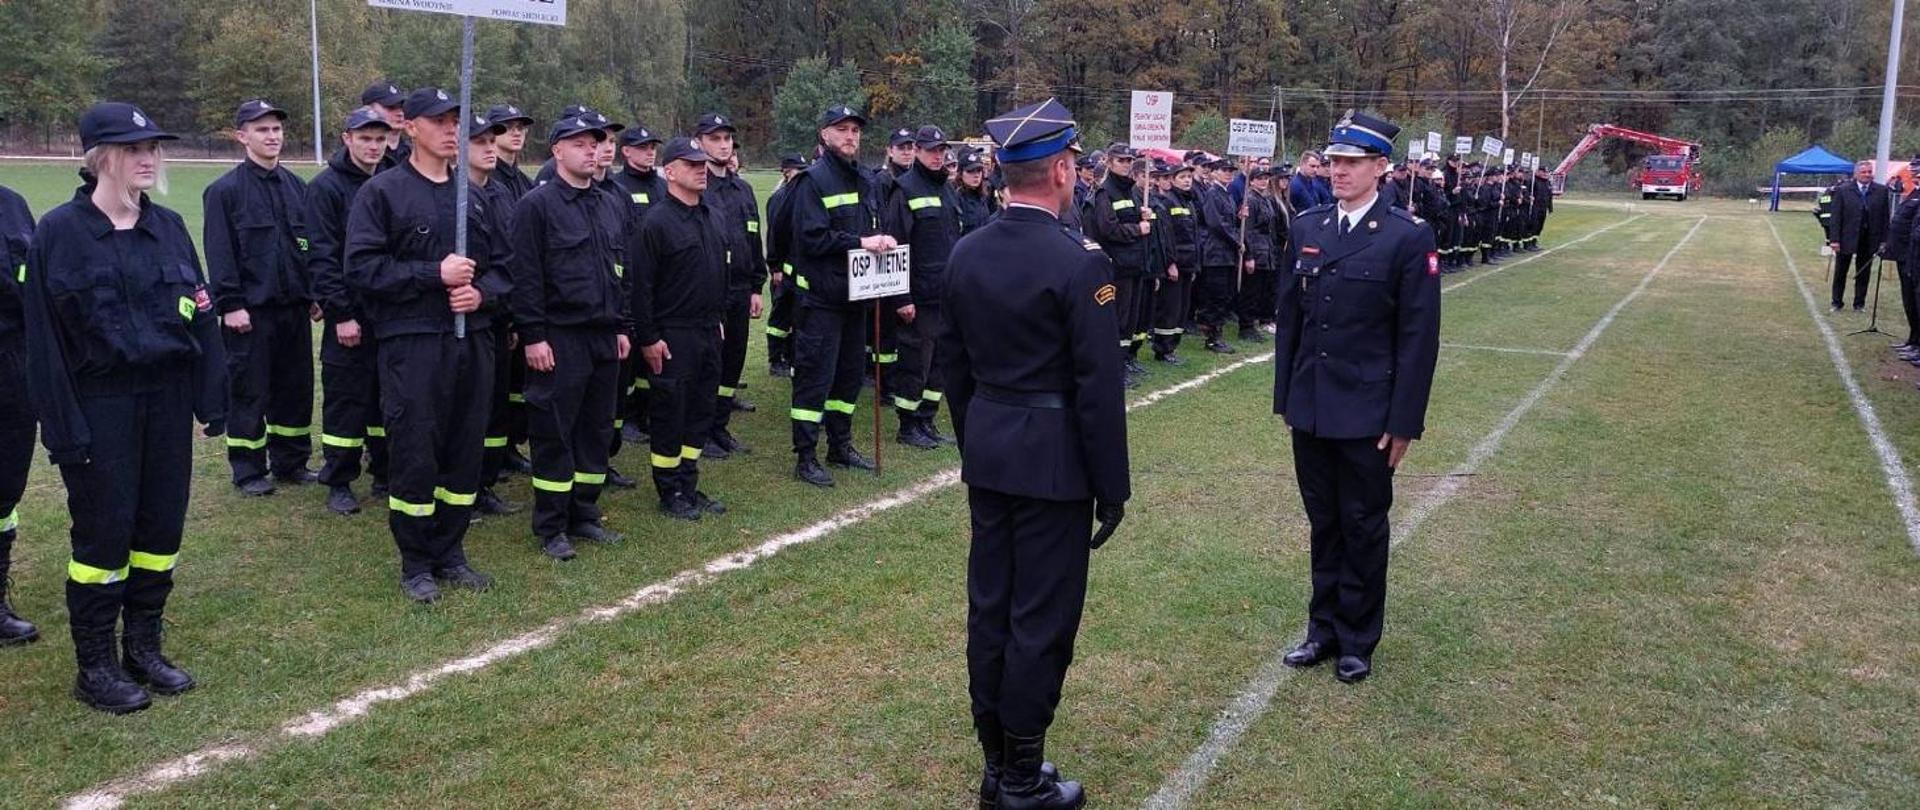 Eliminacje strefowe do VII Wojewódzkich Zawodów Sportowo-Pożarniczych OSP w Pilawie - na zdjęciu strażacy w ubraniu koszarowym stoją w szeregu na zbiórce na boisku trawiastym.